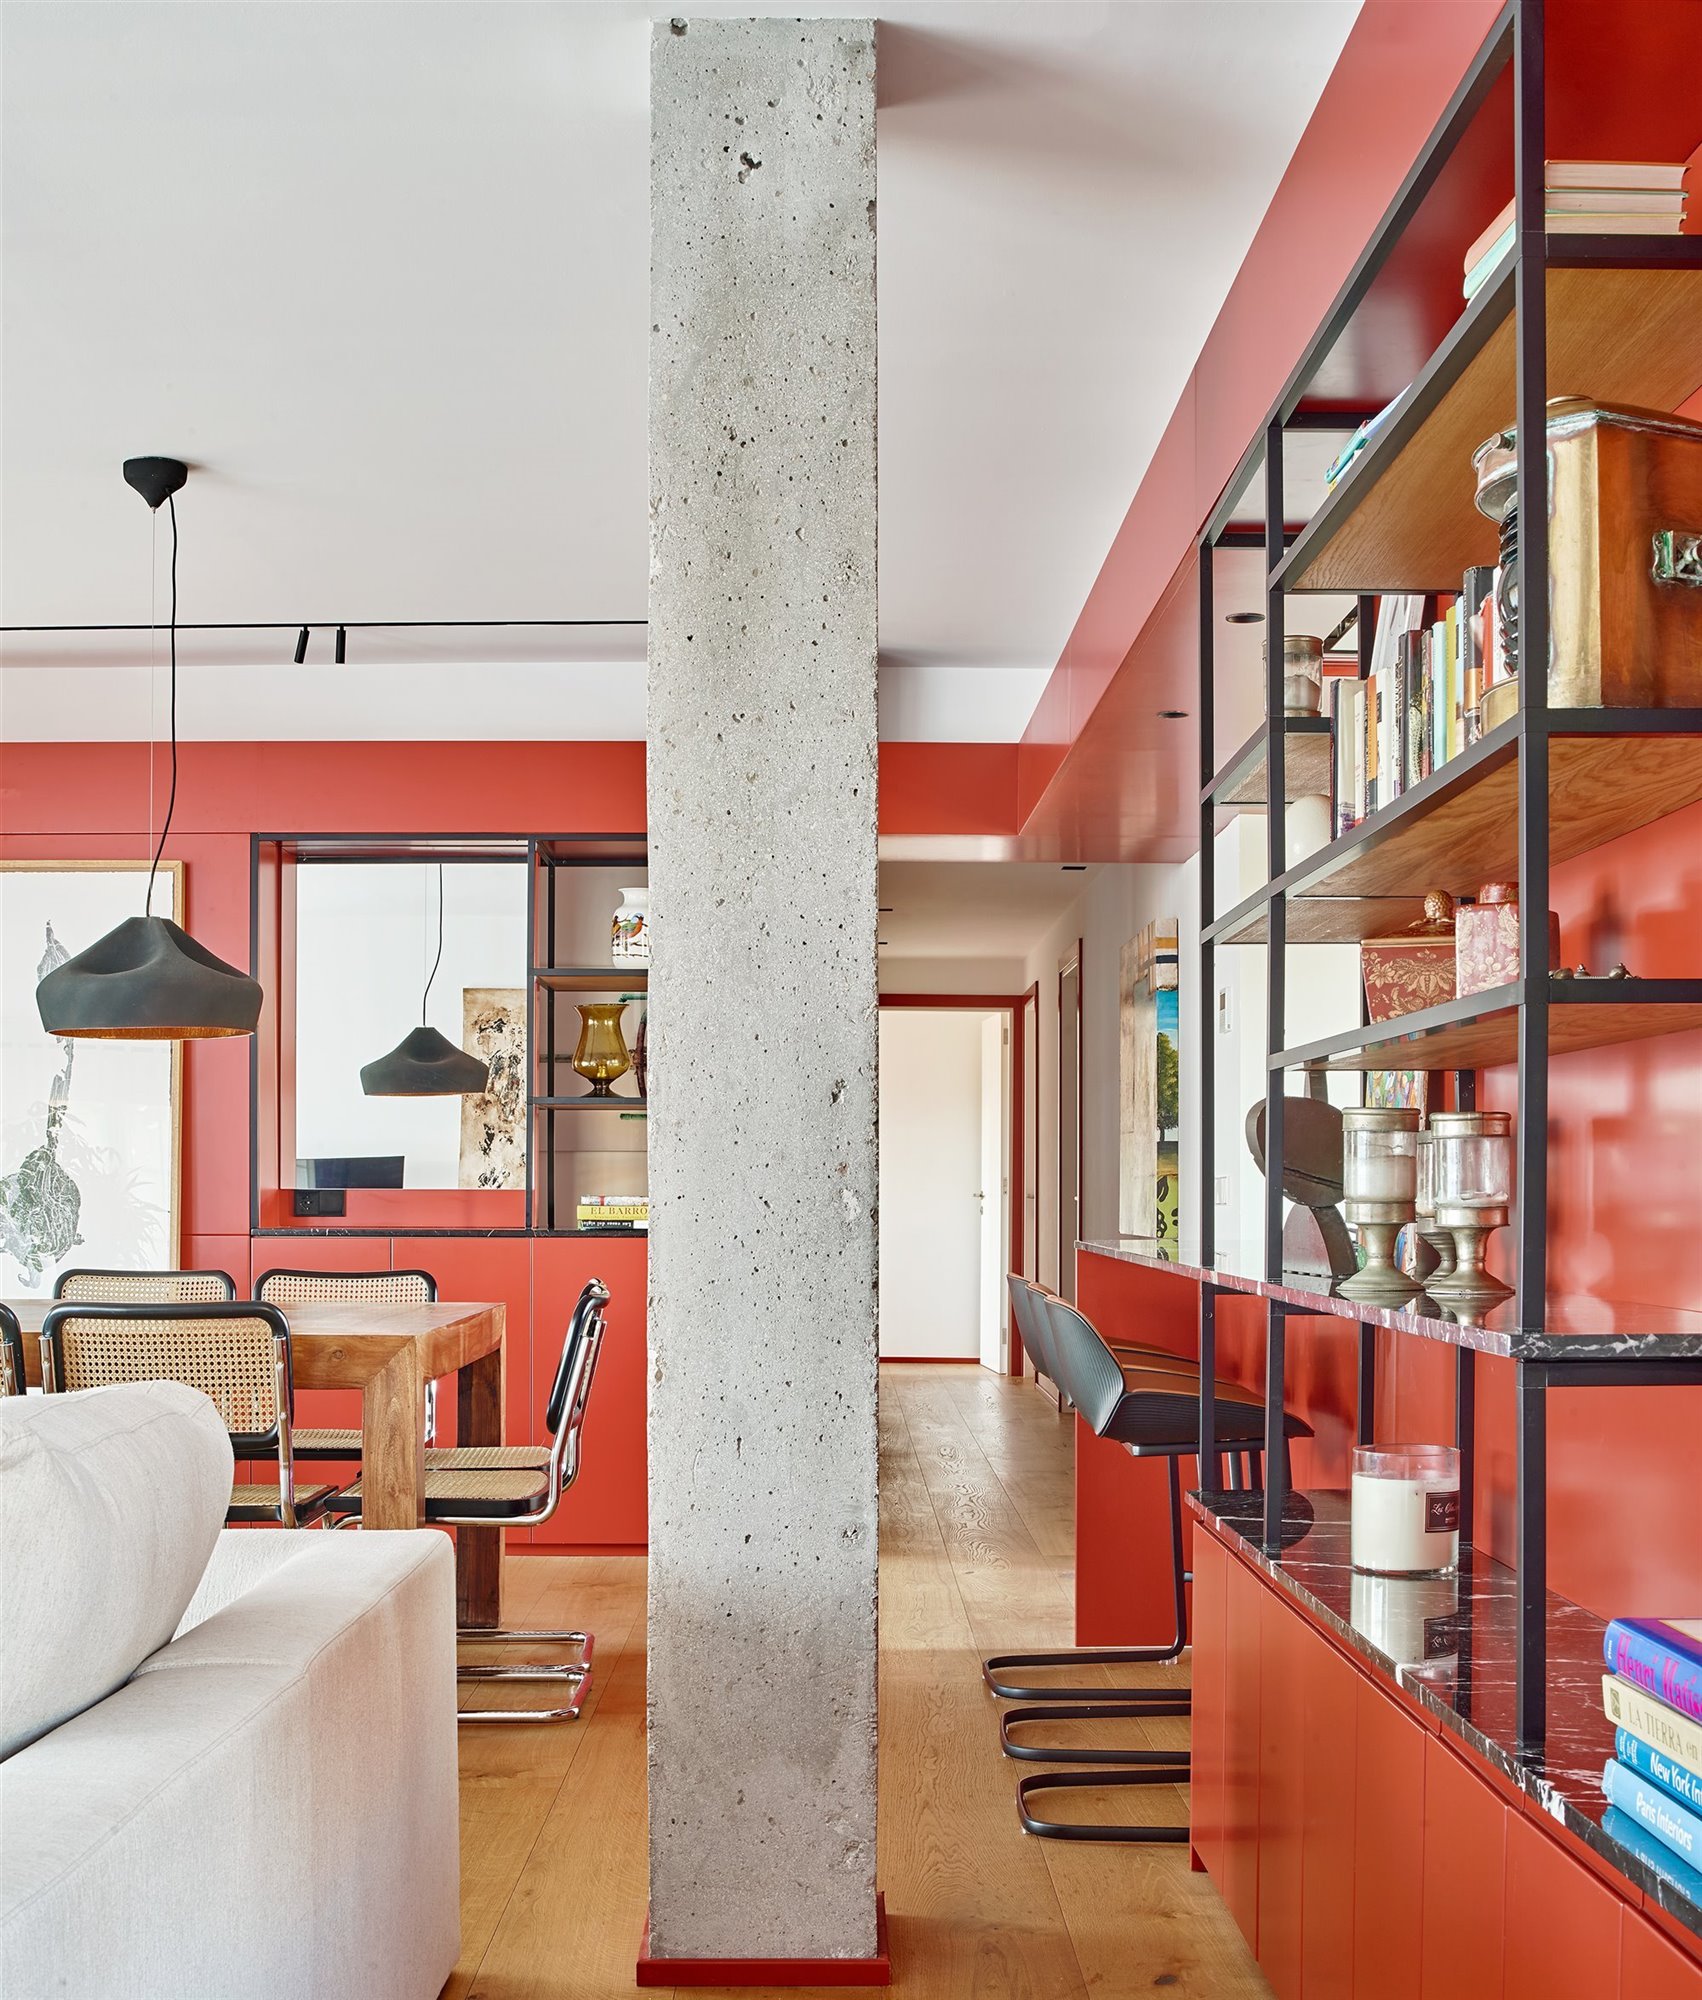 Piso con columna de granito y muebles de obra de color rojo